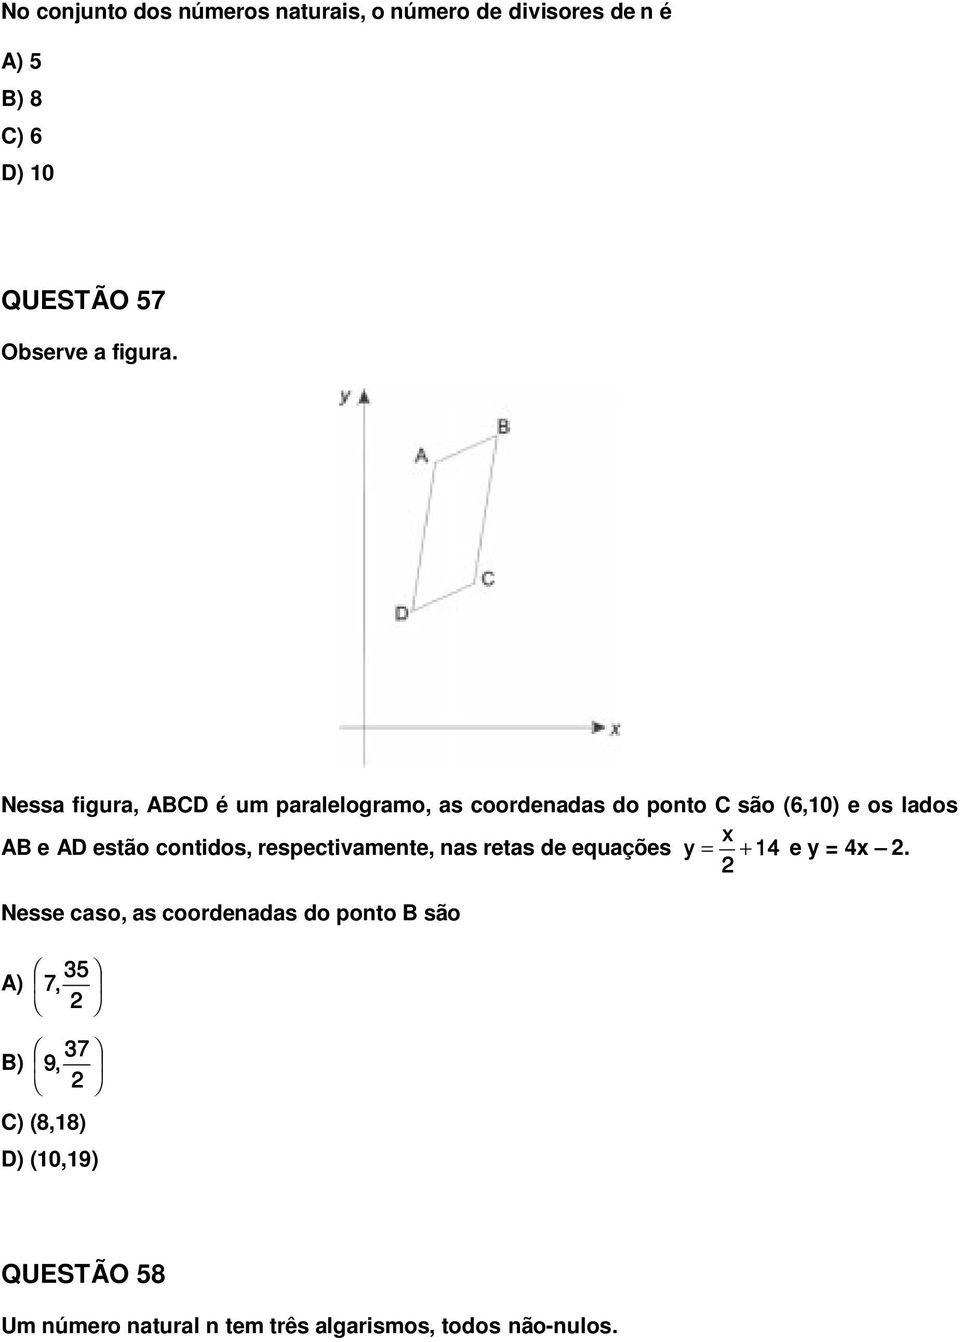 Nessa figura, ABCD é um paralelogramo, as coordenadas do ponto C são (6,10) e os lados x AB e AD estão